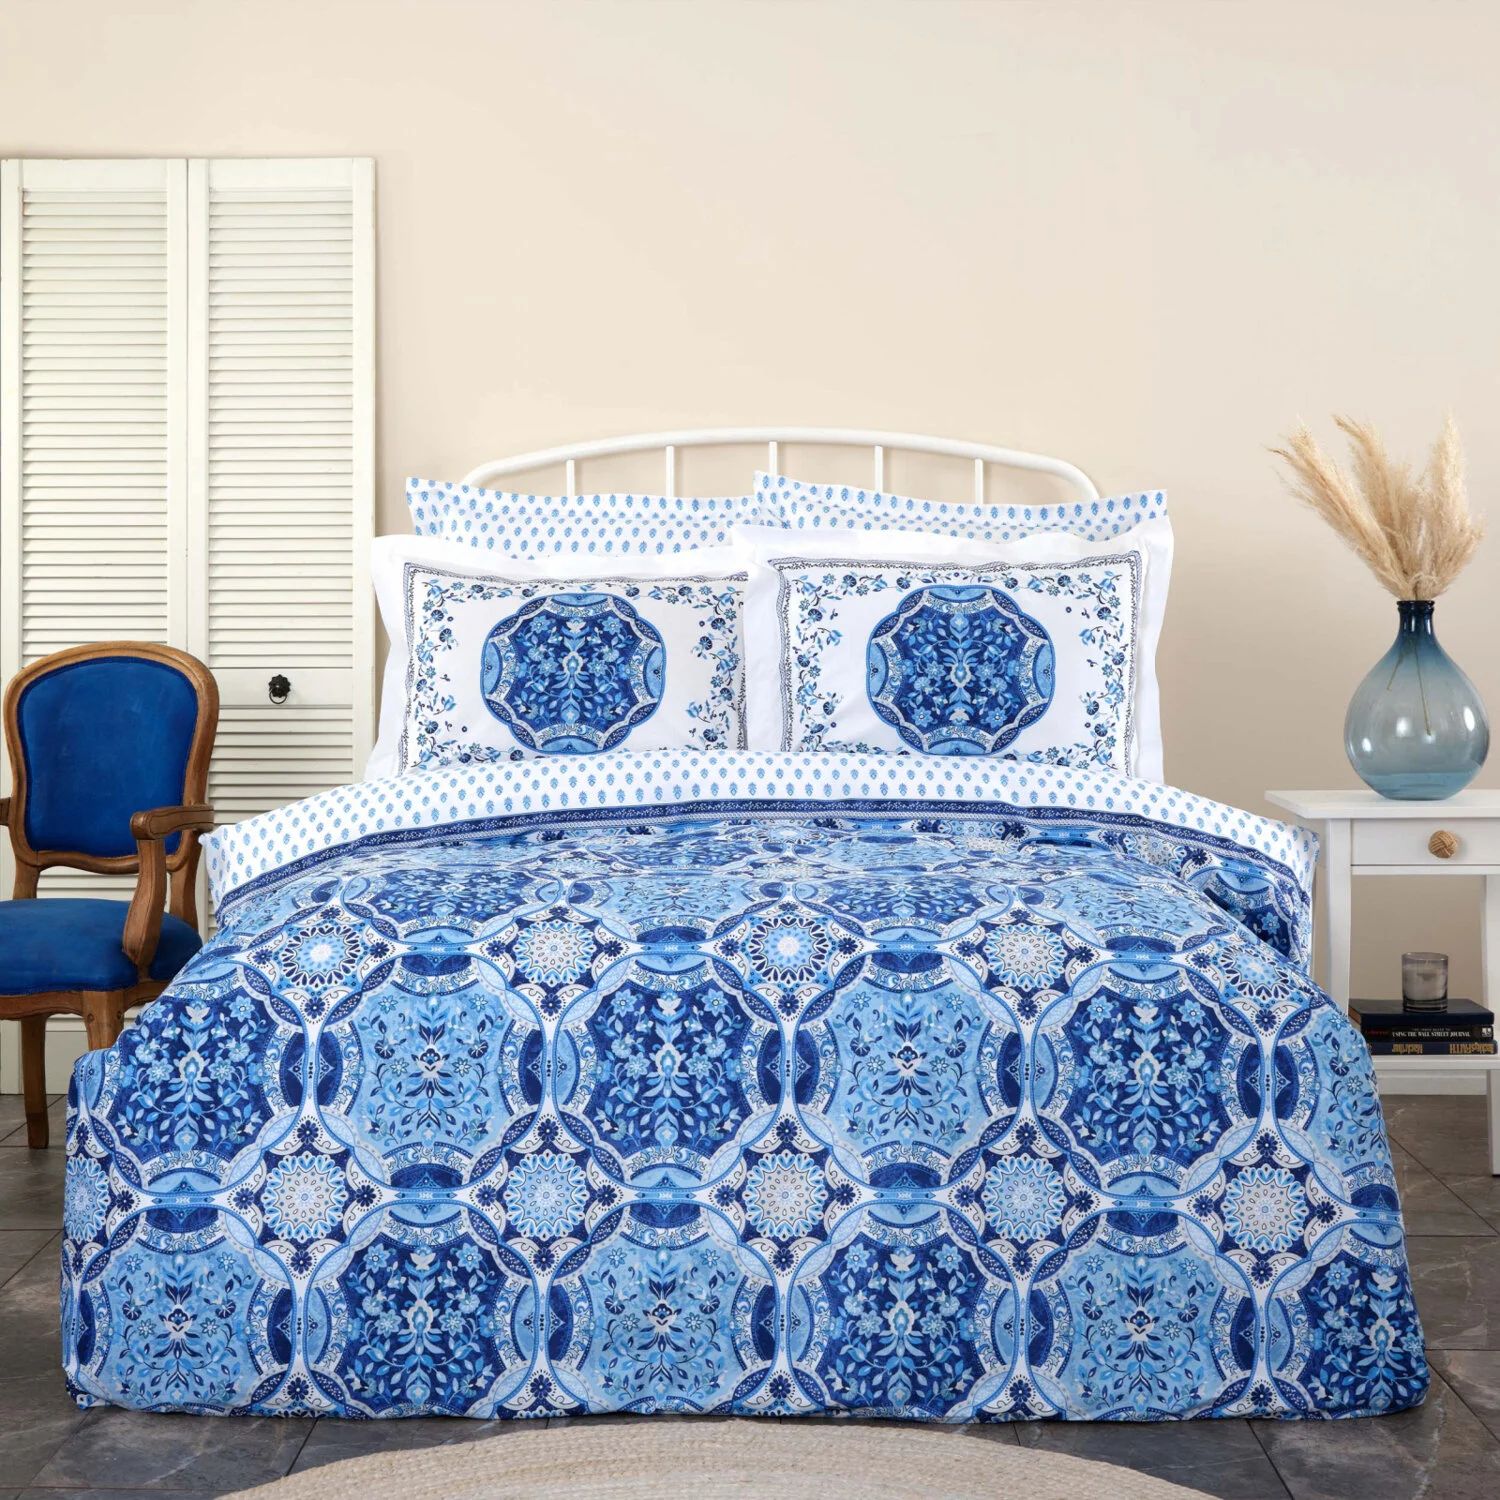 комплект постельного белья с вышивкой karaca home Karaca Home Idella Синий Хлопковый Комплект постельного белья